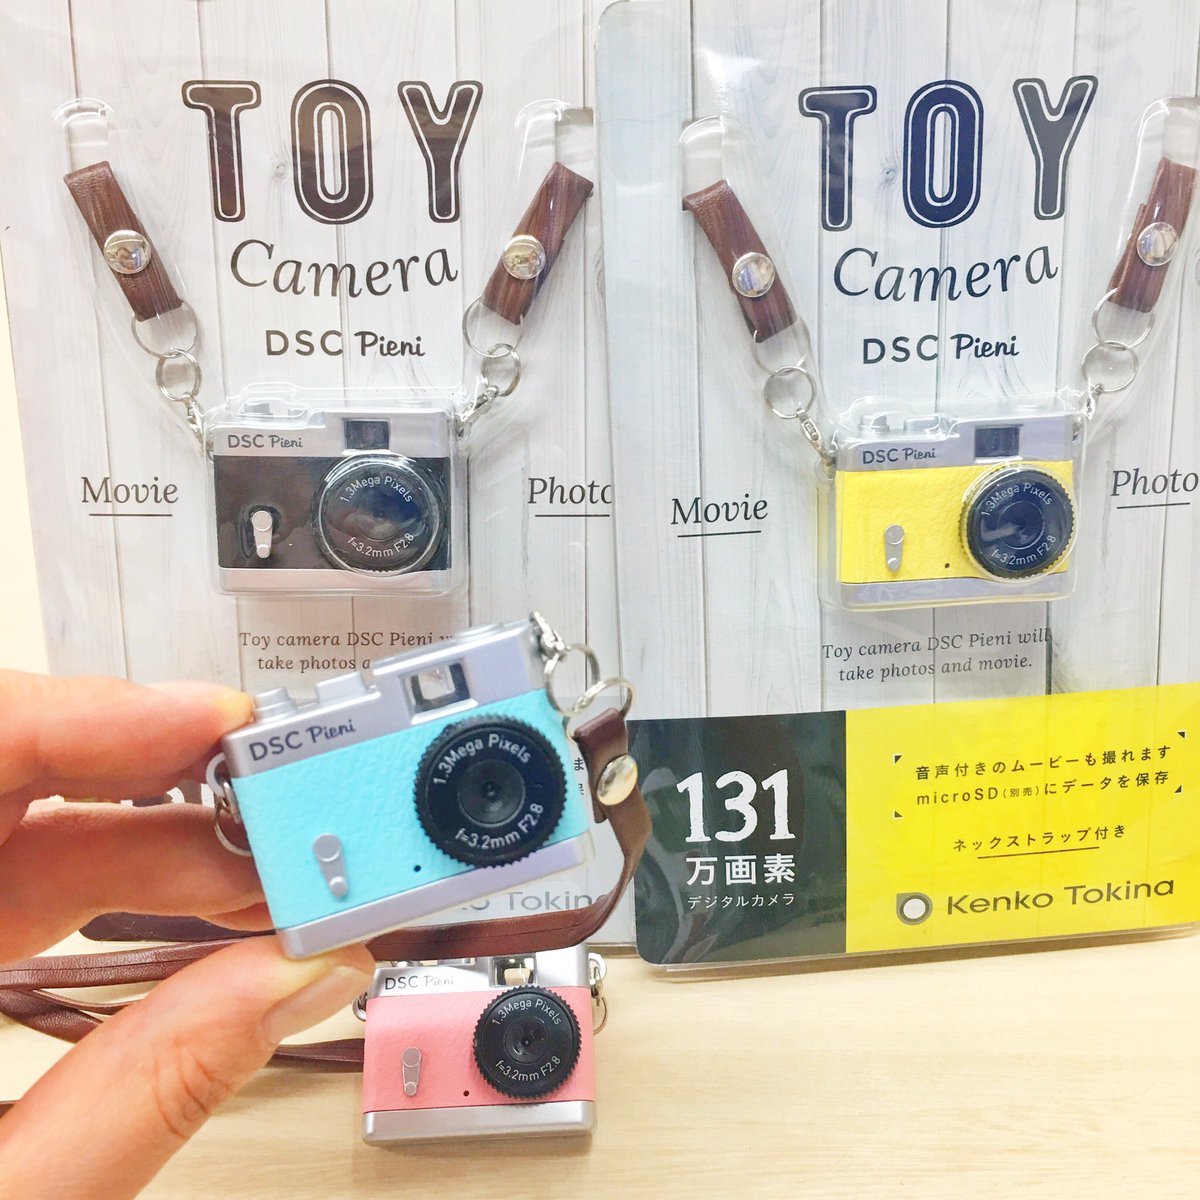 カメラのキタムラ東京 渋谷店 可愛いトイカメラが入荷 クラシックカメラ風デザインがかわいい 超小型カメラ 静止画だけでなく 音声付きのムービーも撮ることができるよ これまたインスタ映えするかもー 笑 プレゼント にもイイネ ぜひ店頭へ